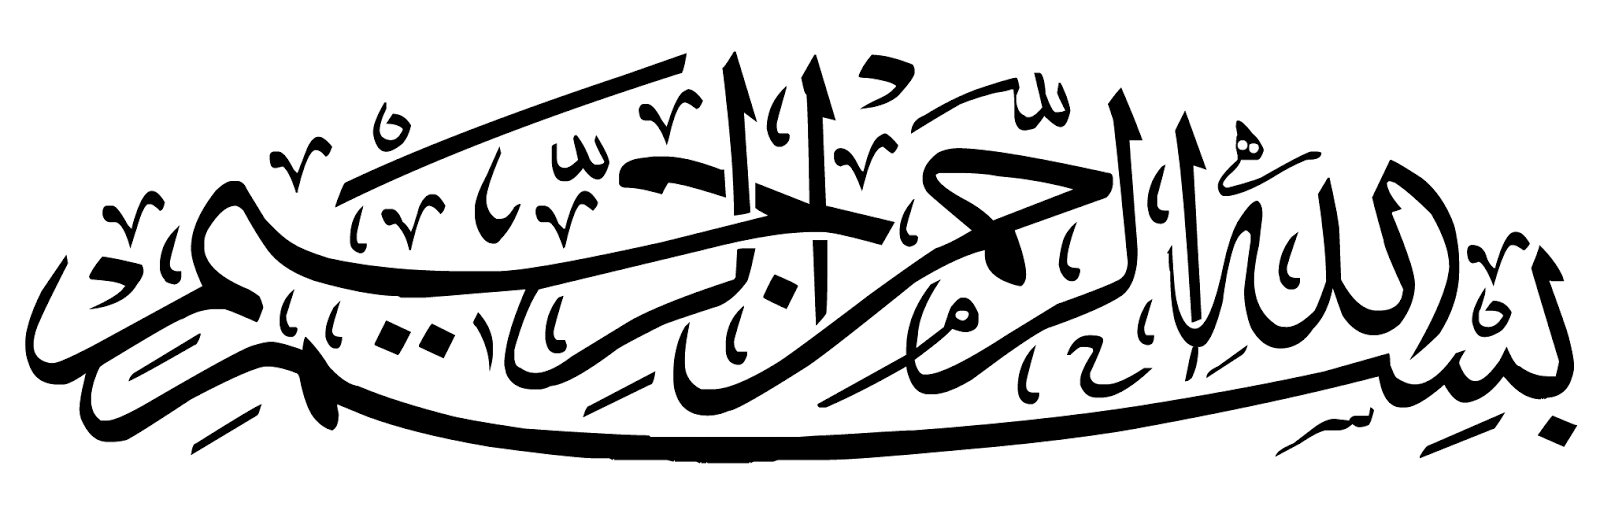 Download gambar kaligrafi basmalah berefolusi tinggi di